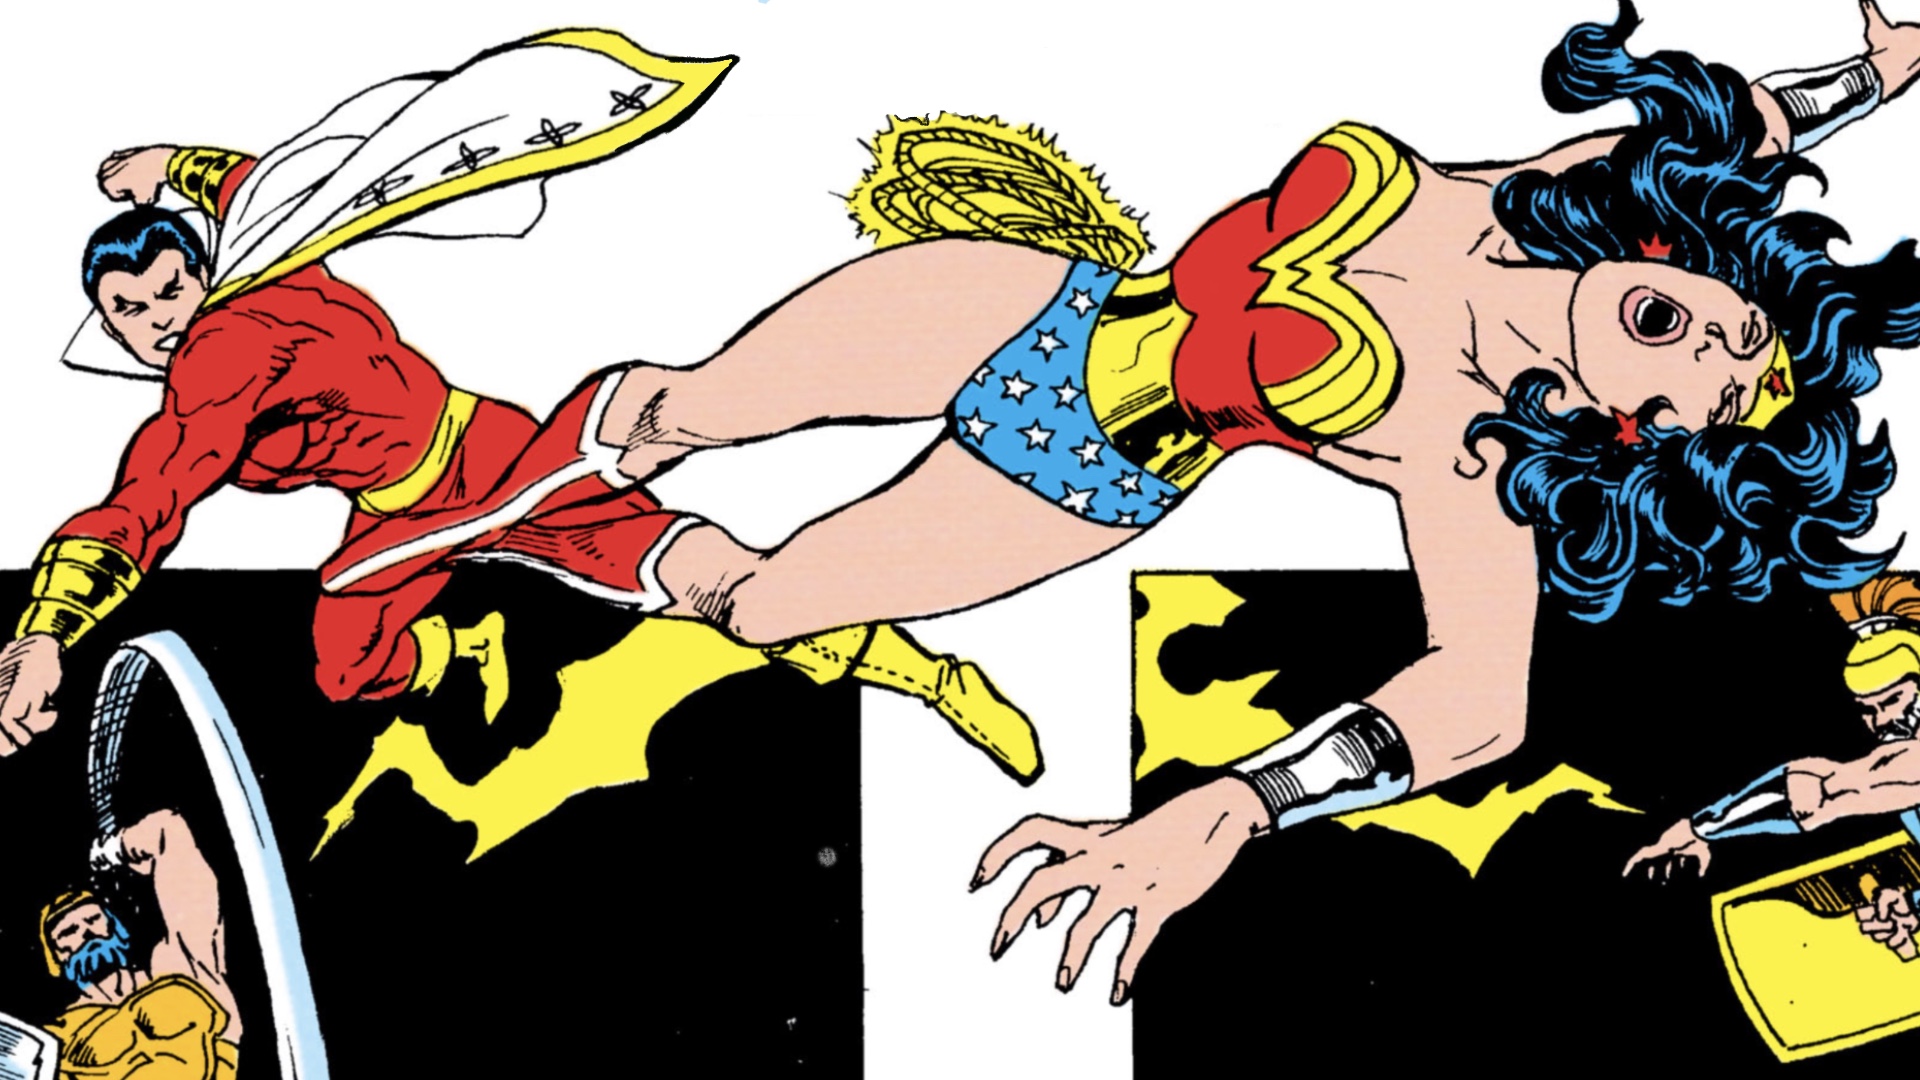 DC Multiverse 7 Shazam! Fury of the Gods Wonder Woman